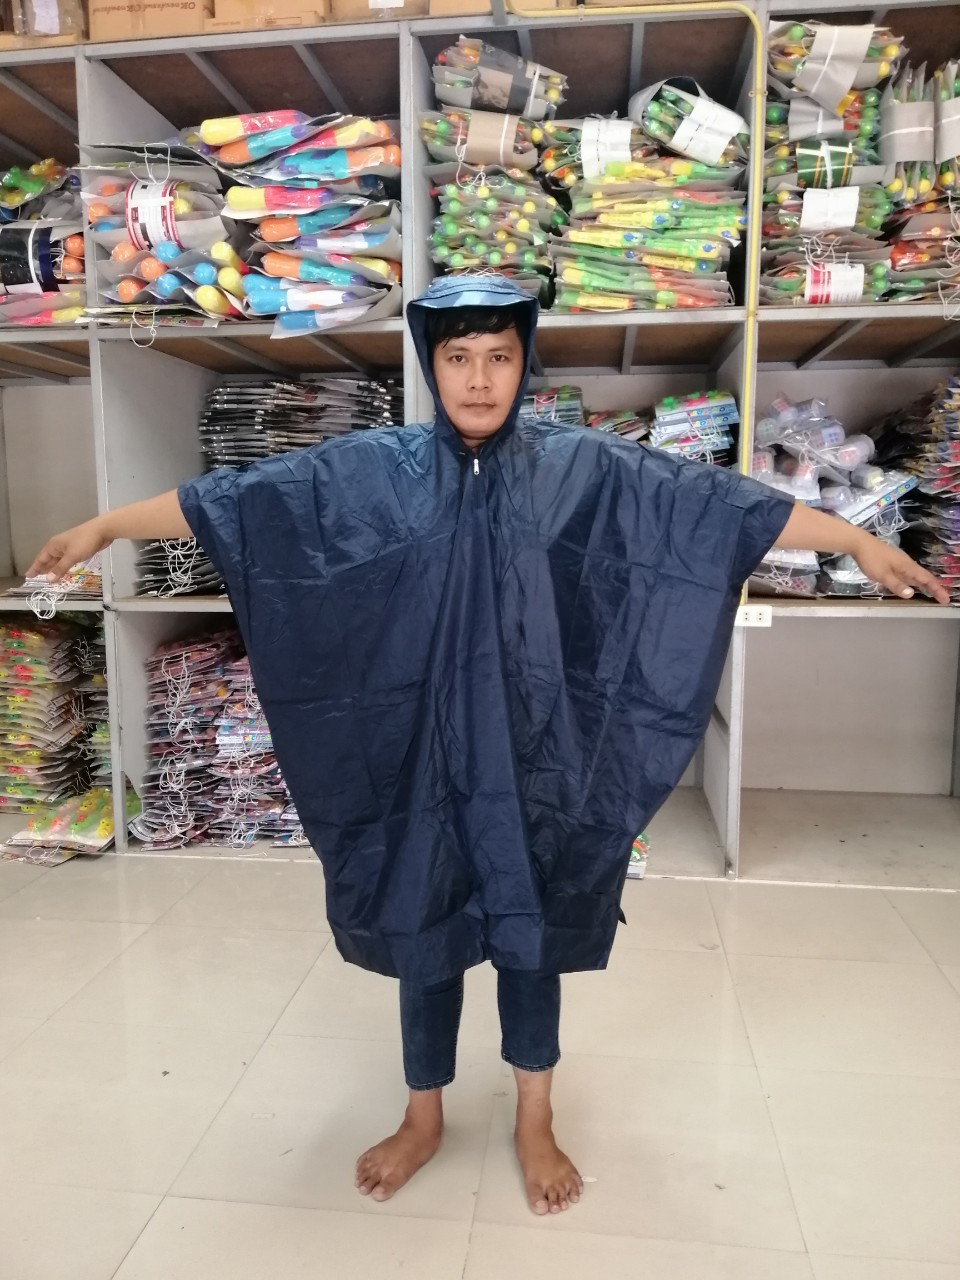 เสื้อกันฝนงานไทย(AS0046) มอไซต์ คุณภาพคุ้มราคา ขนาดใหญ่  ผ่าข้าง มีหมวก ทรงค้างคาว ราคาถูกสุด พร้อมถุงใส่เสื้อฝน (สำหรับผู้ใหญ่)